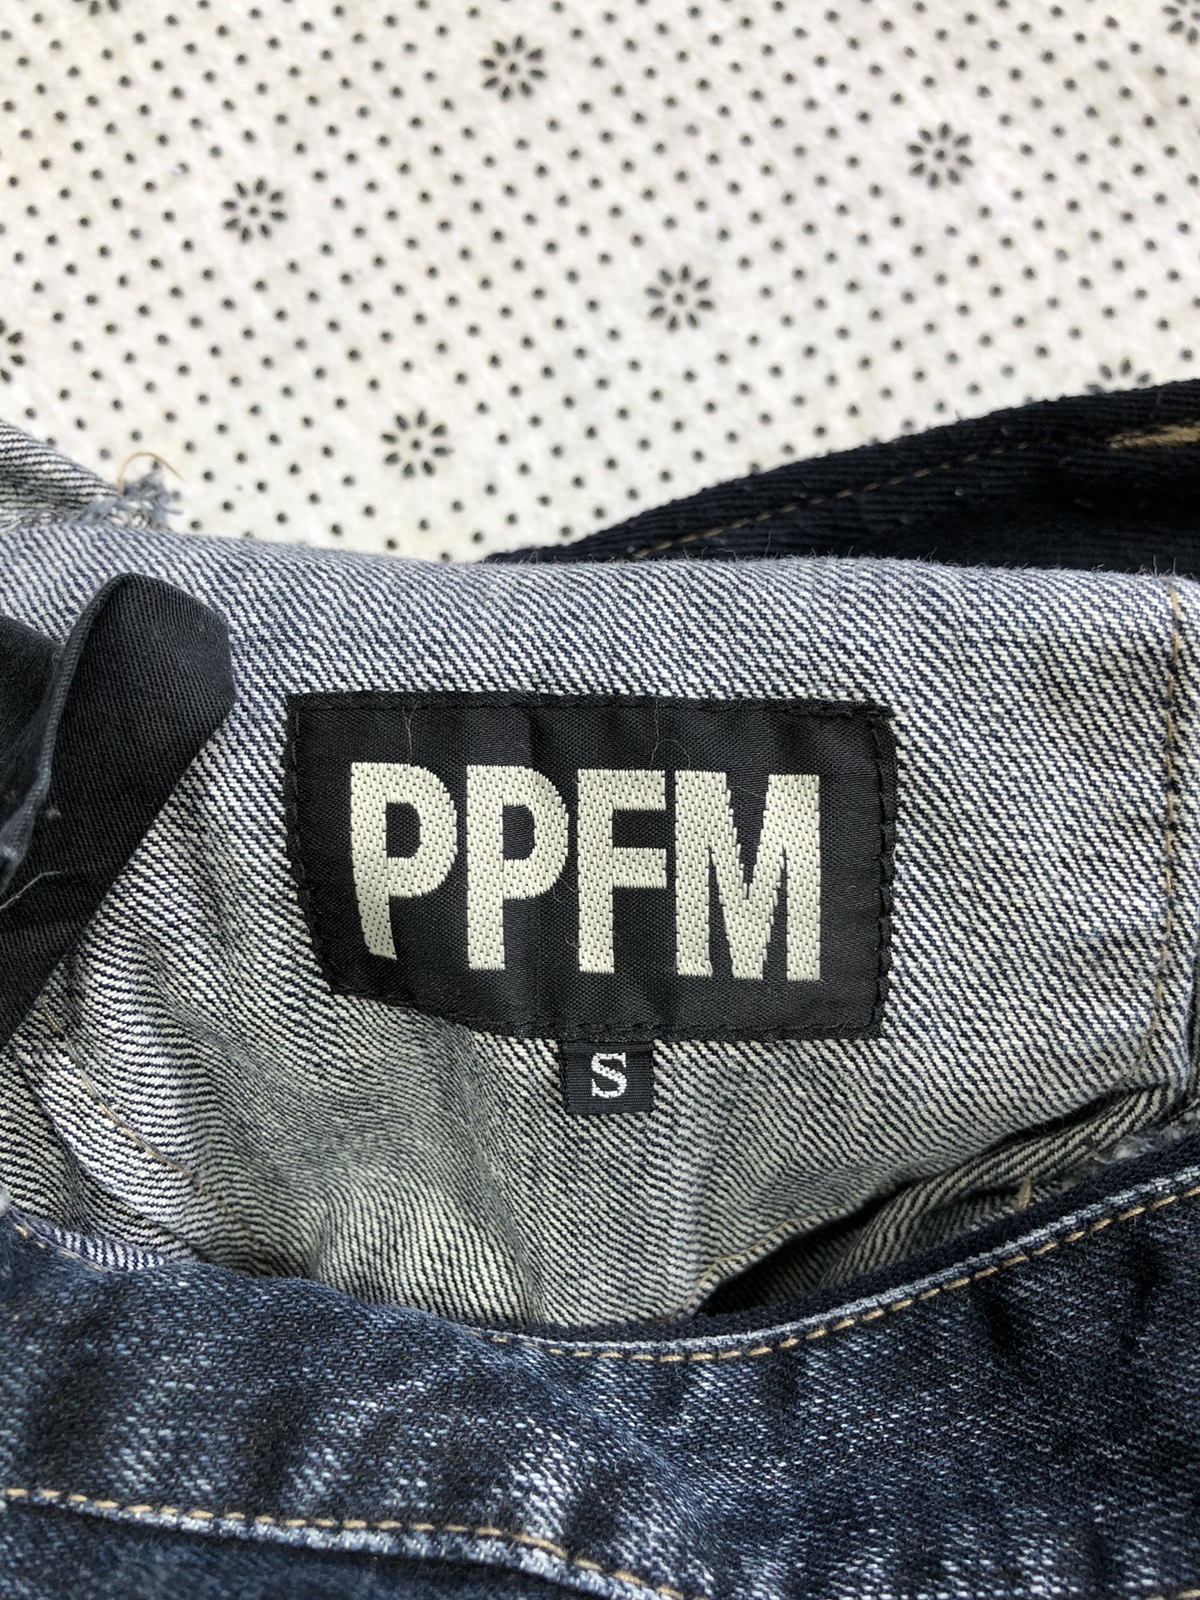 Other Designers Archival Clothing - PPFM bondage jeans tactical